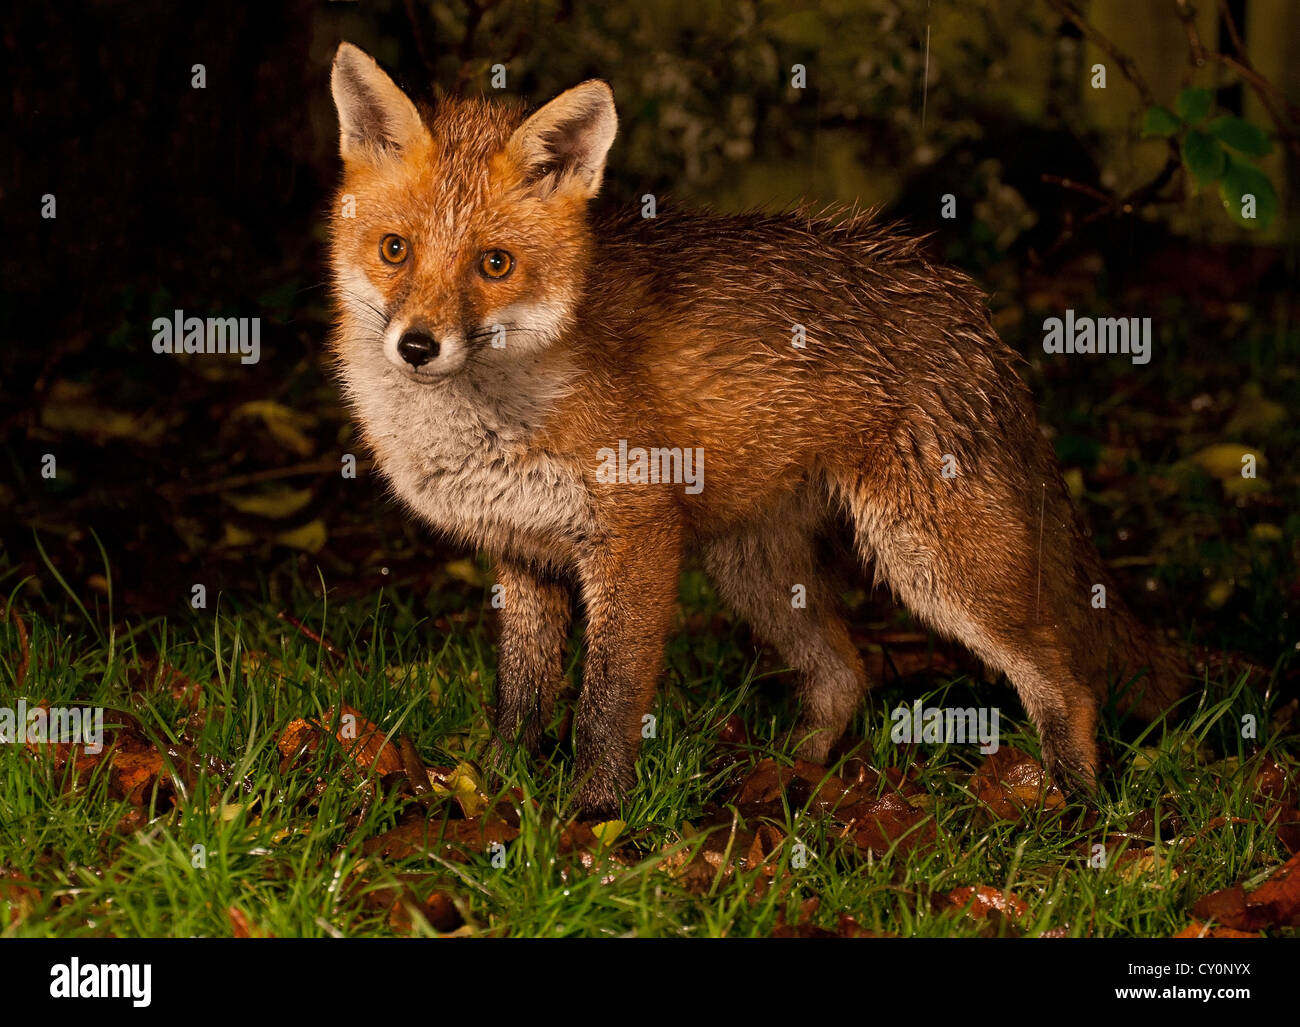 Urban fox cub at night Stock Photo